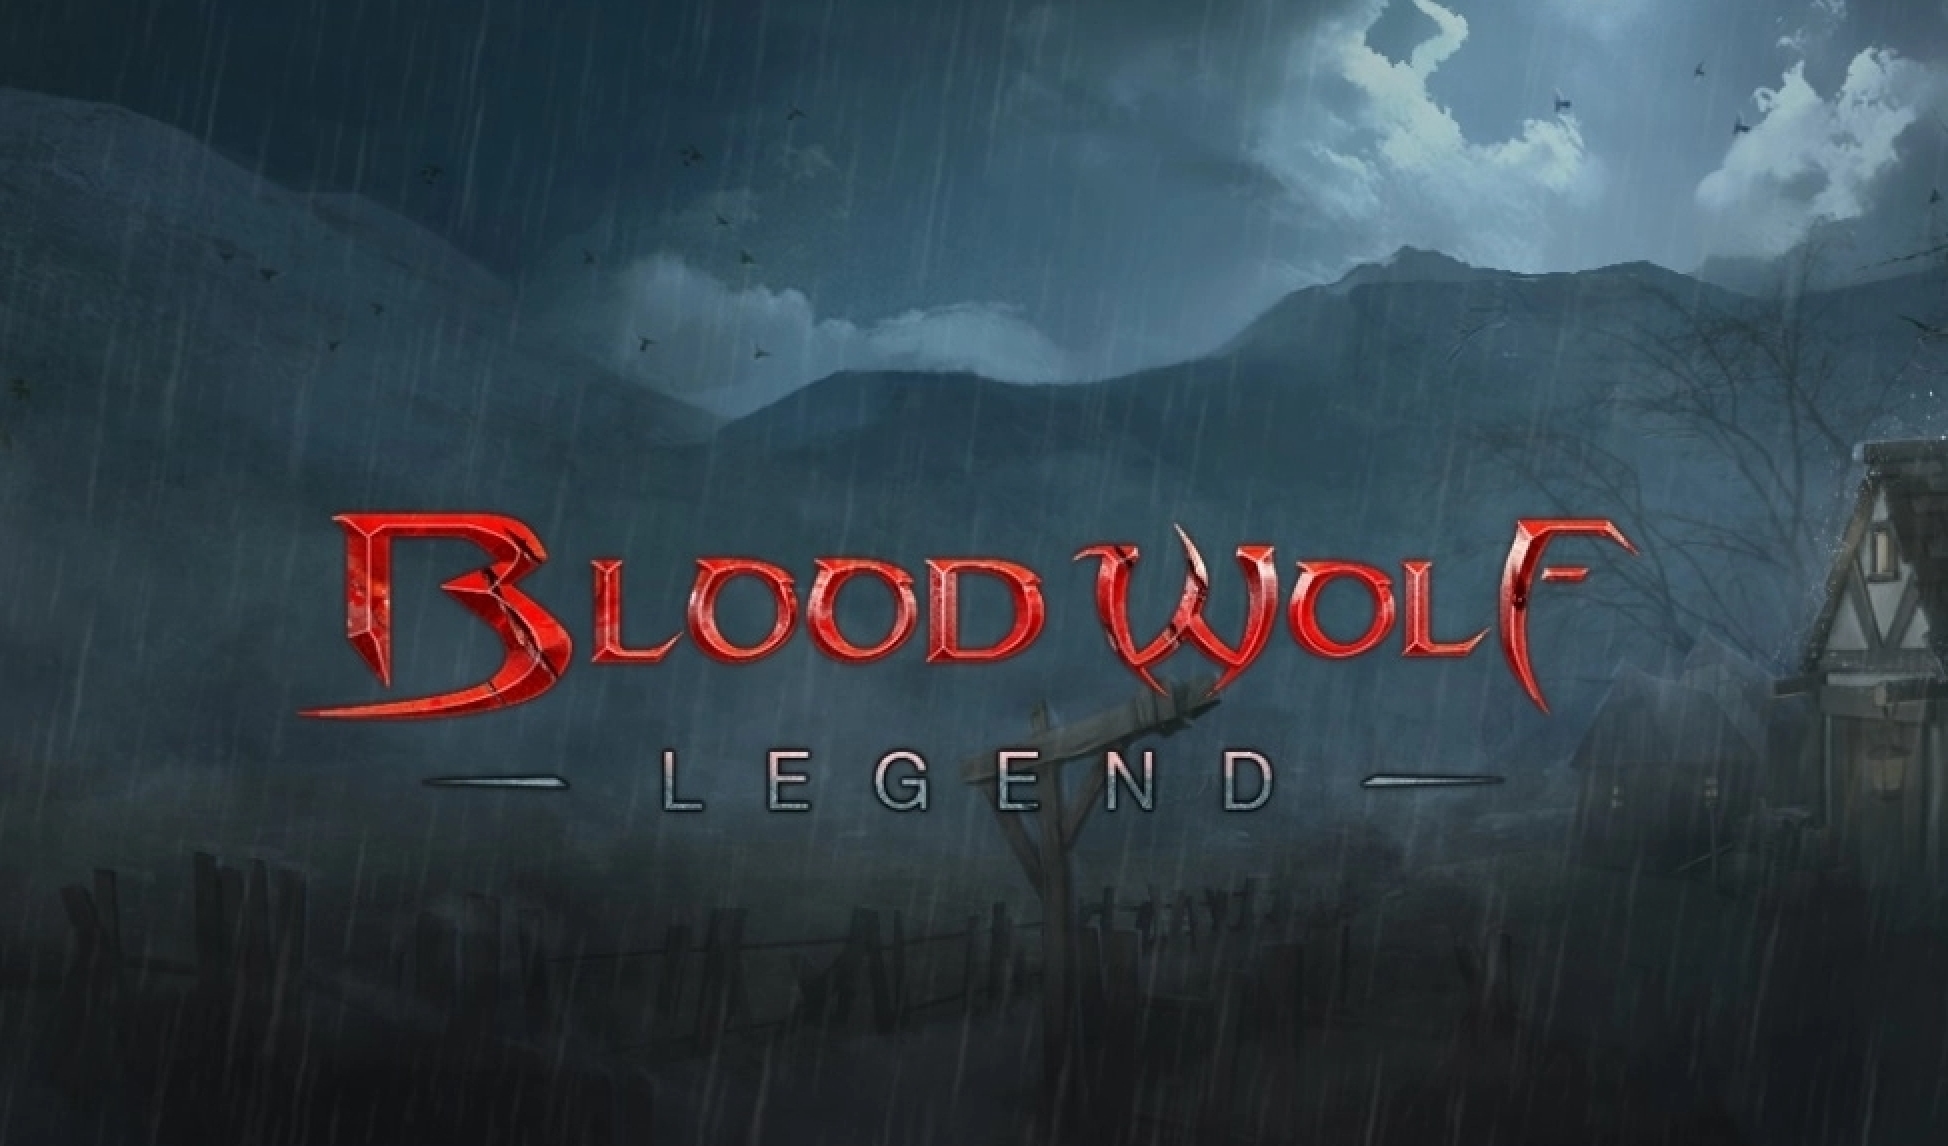 Blood wolf Legend demo